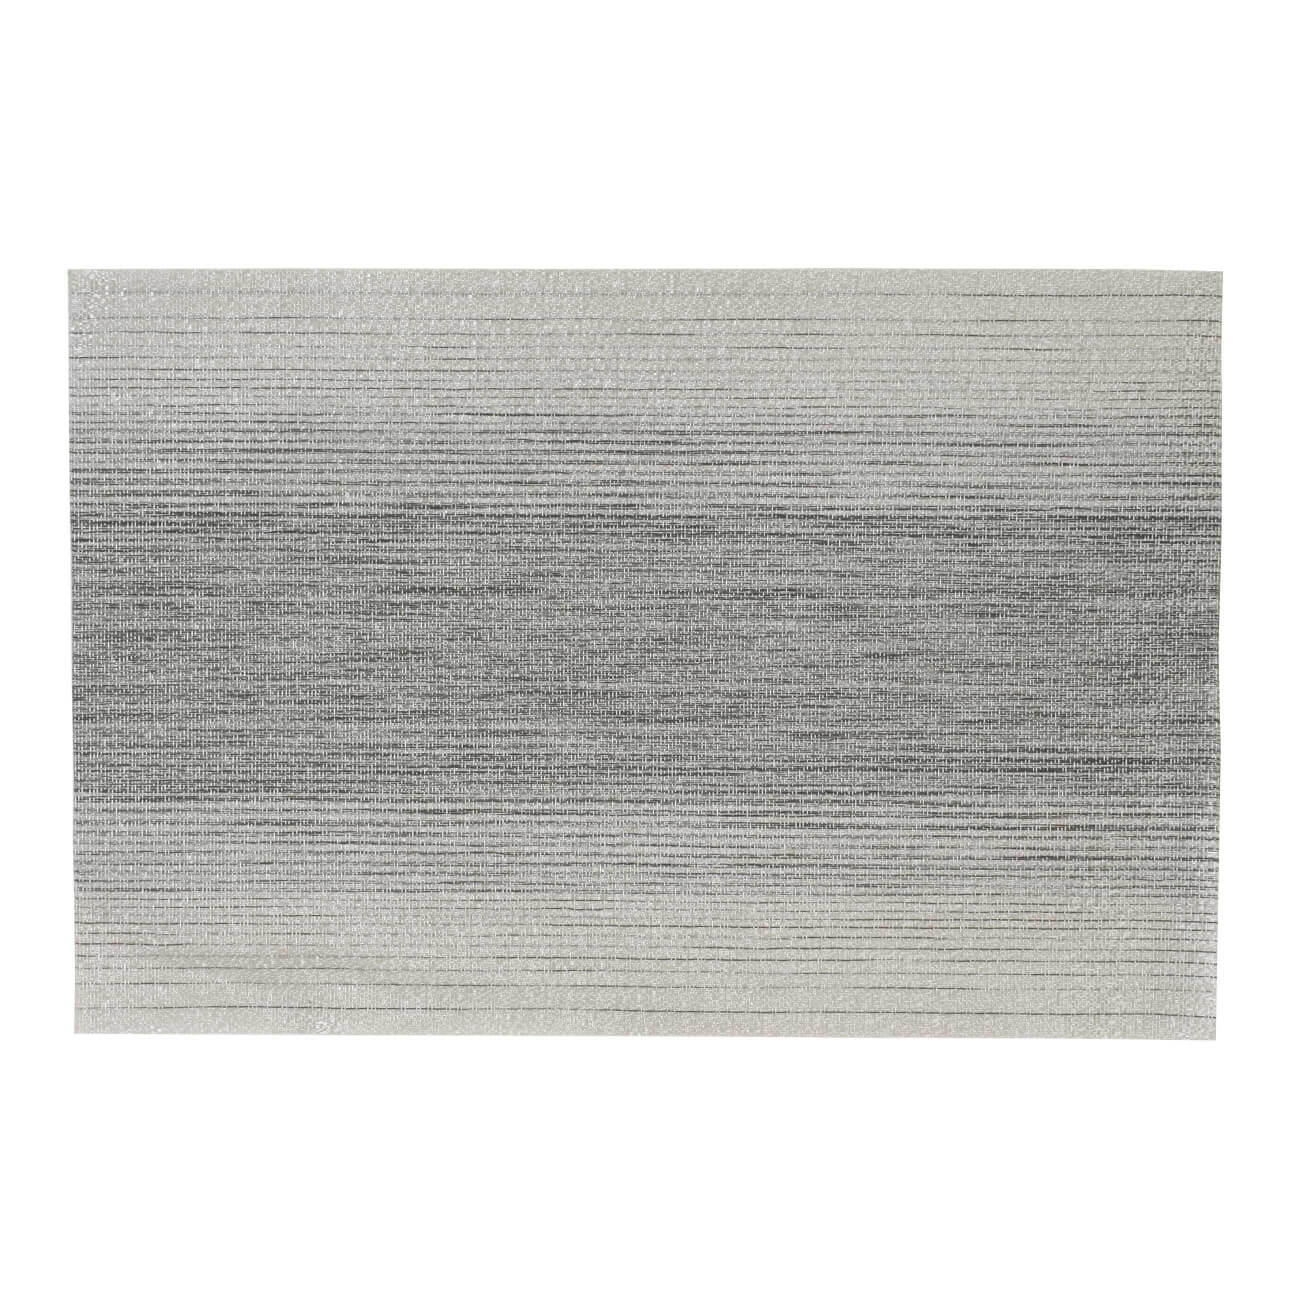 Салфетка под приборы, 30x45 см, ПВХ, прямоугольная, темно-серая, Solid изображение № 1